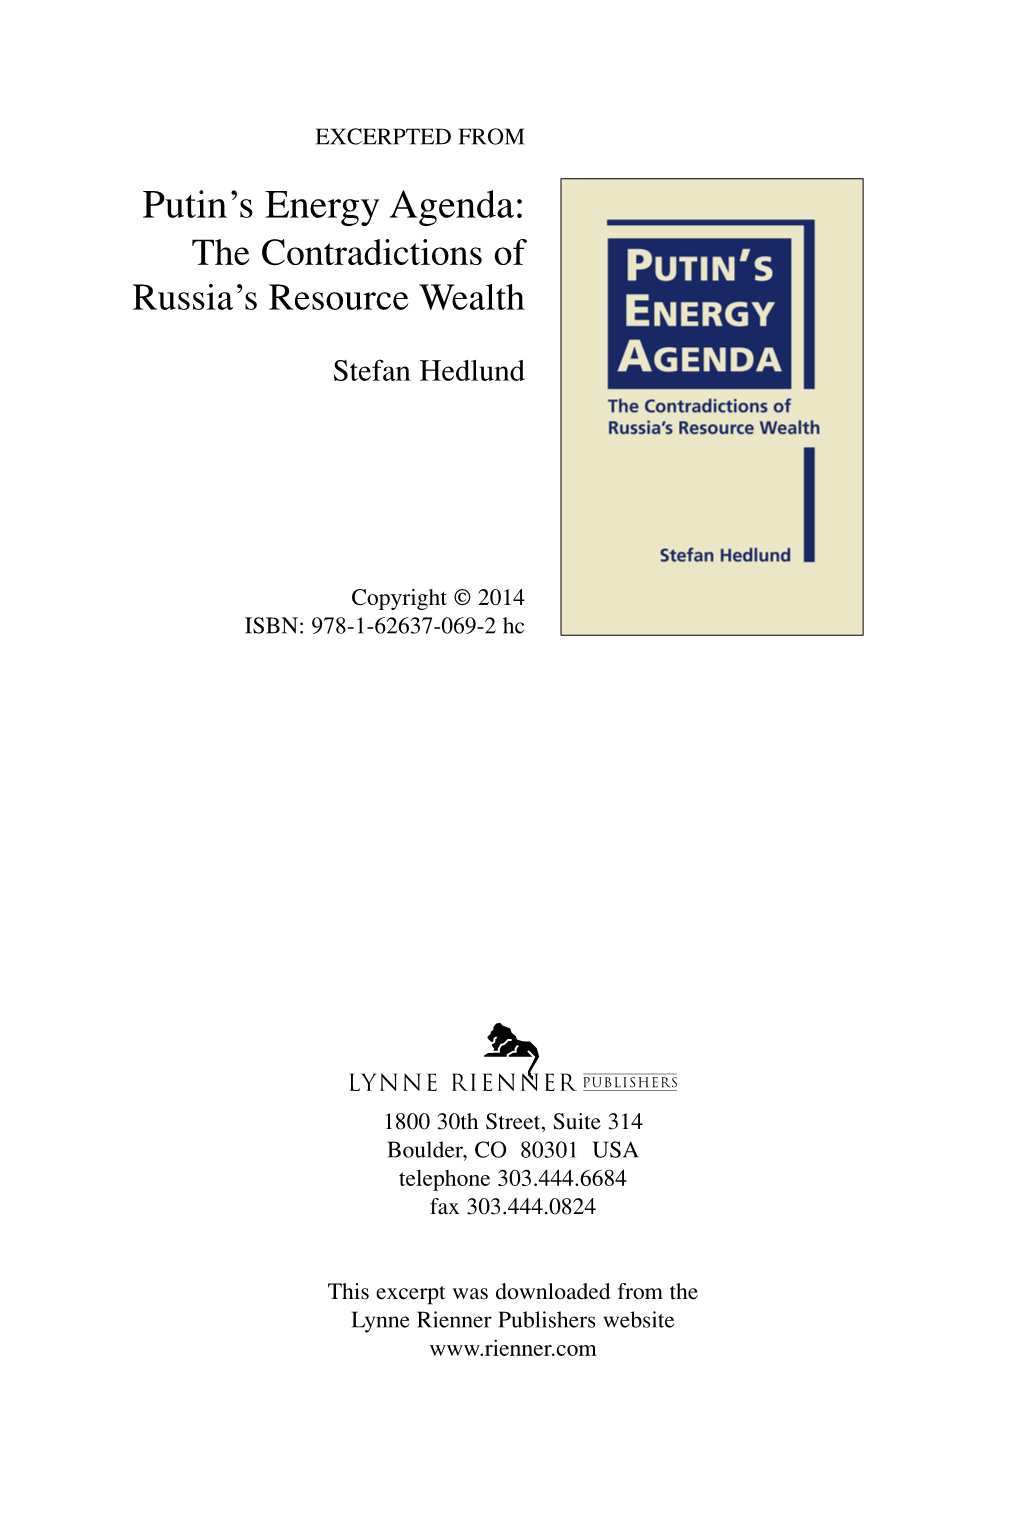 Putin's Energy Agenda